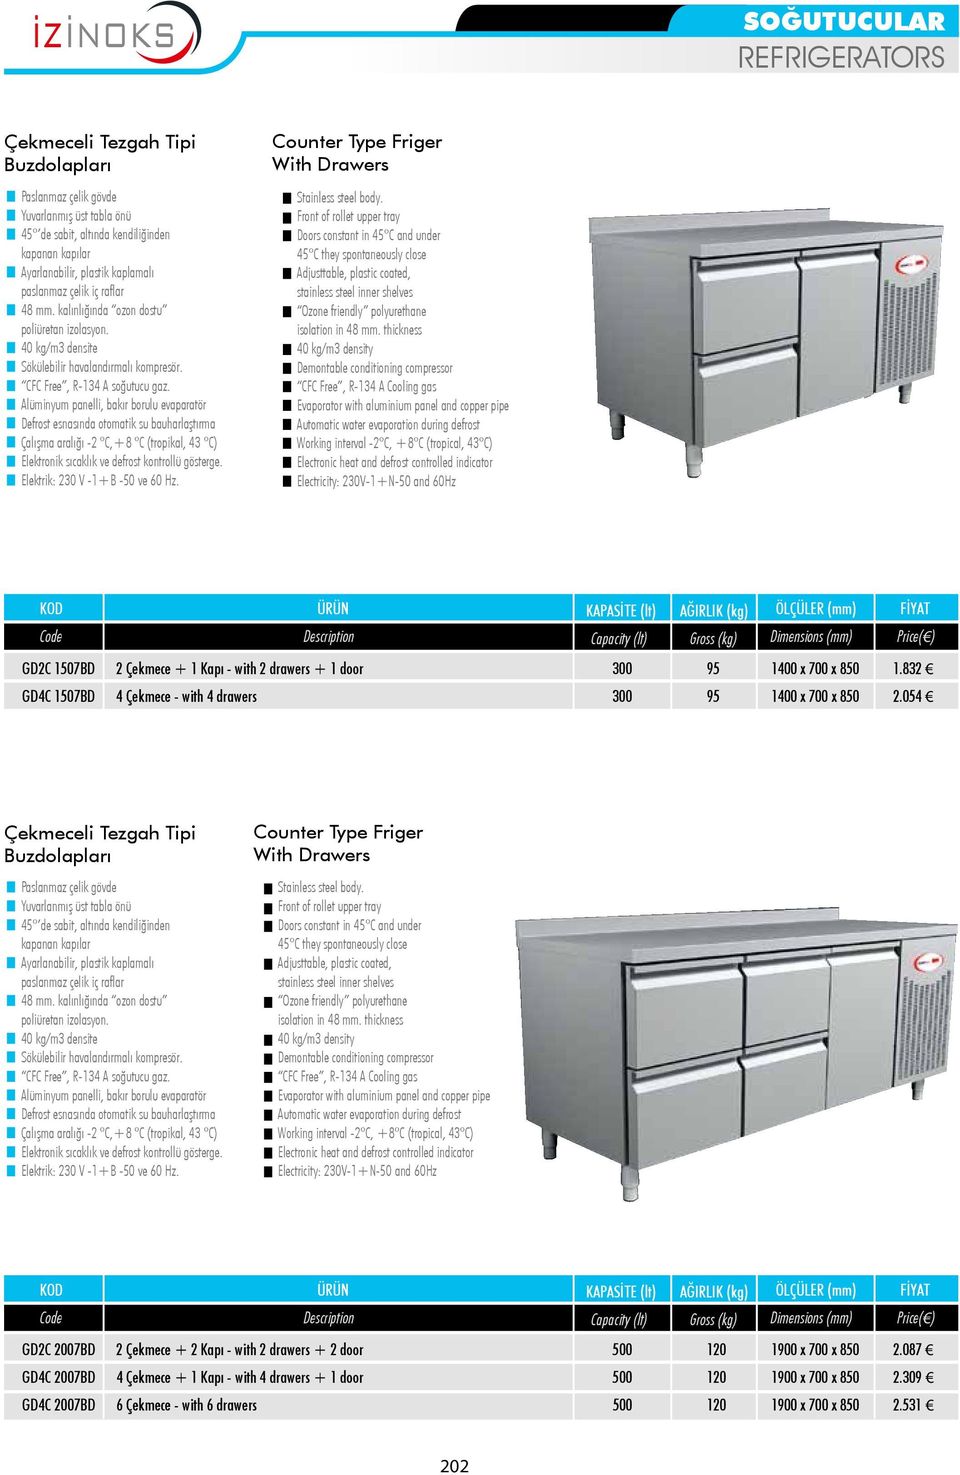 054 Çekmeceli Tezgah Tipi Buzdolapları Counter Type Friger With Drawers GD2C 2007BD 2 Çekmece + 2 Kapı - with 2 drawers + 2 door 500 120